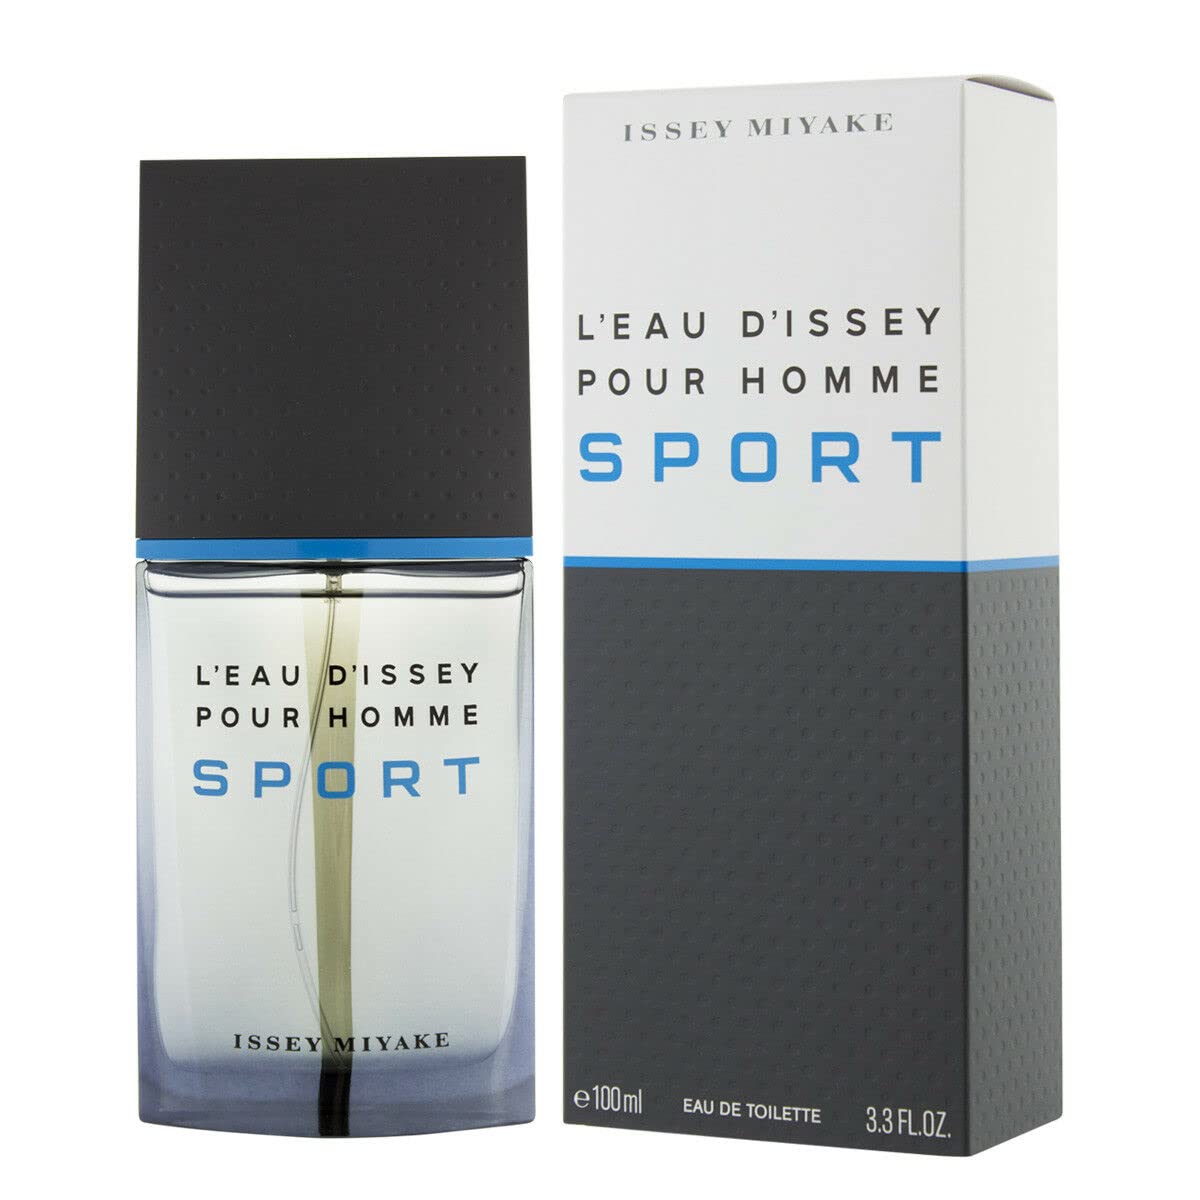 L'Eau D'Issey Pour Homme Sport by Issey Miyake 3.3 oz Eau de Toilette Spray